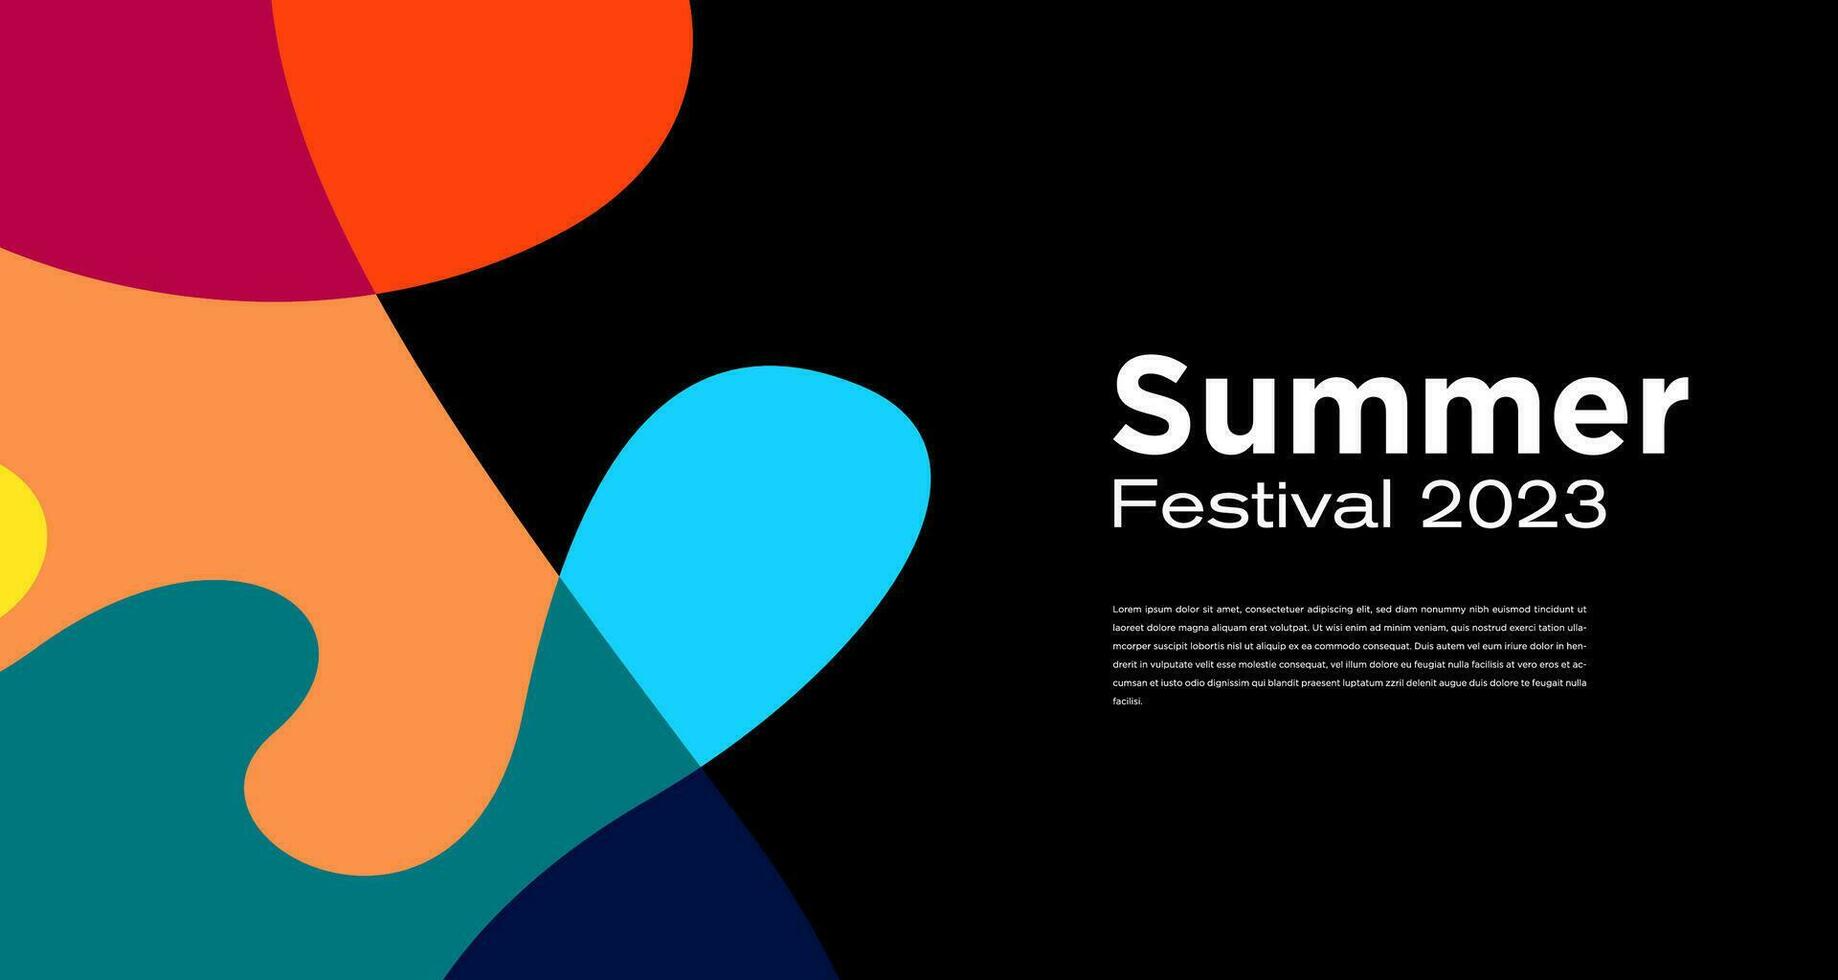 vector kleurrijk vloeistof abstract achtergrond voor zomer festival 2023